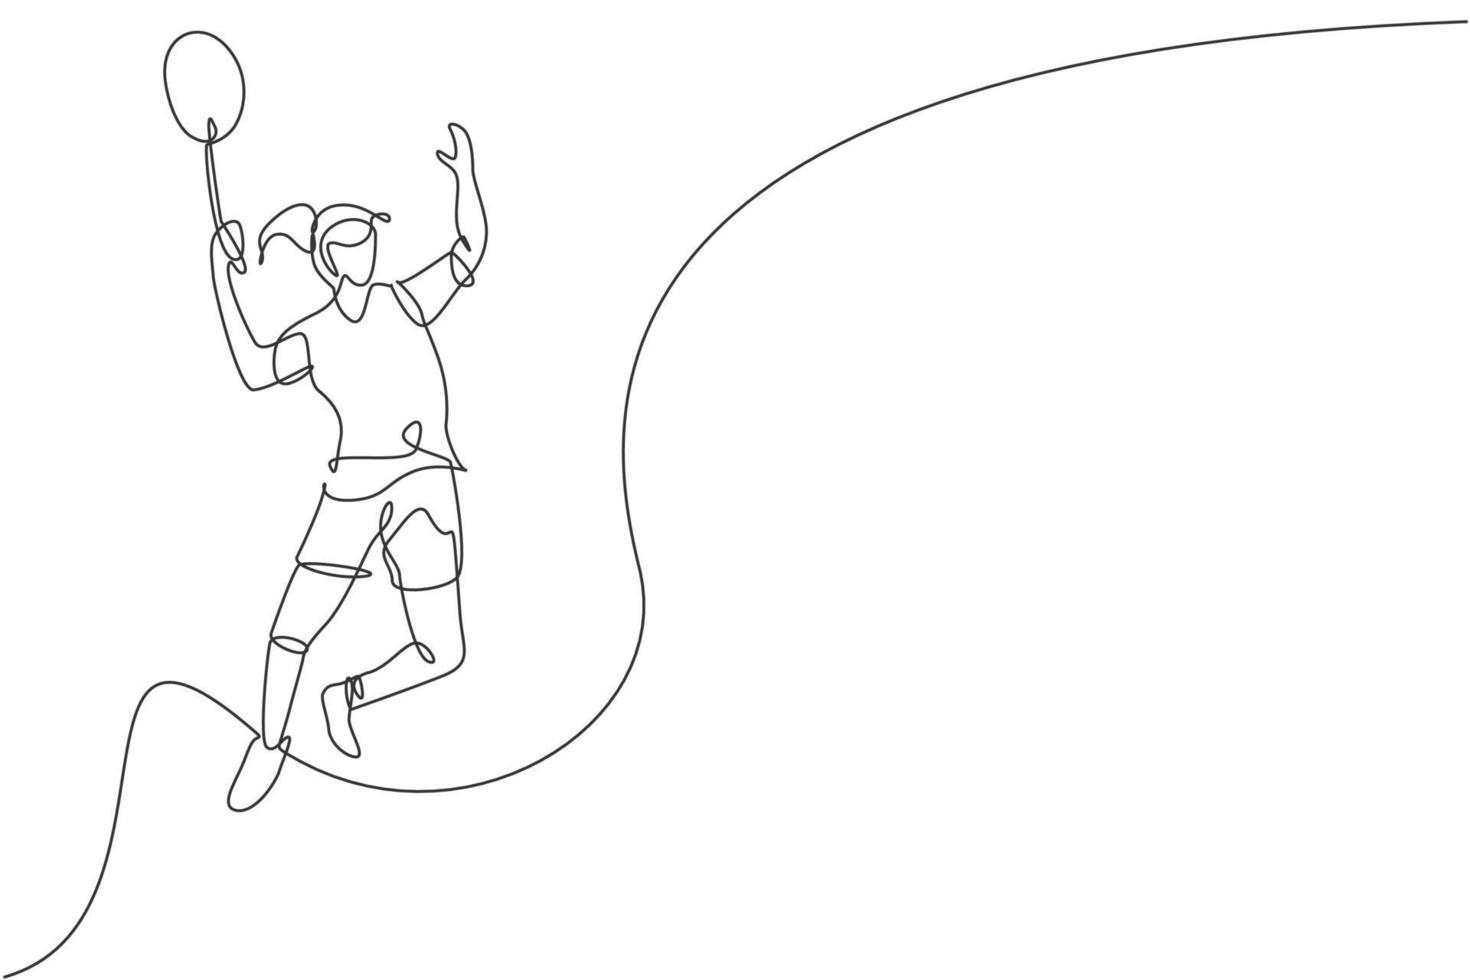 un disegno a linea continua di un giovane giocatore di badminton salta il volano con la racchetta. concetto di sport competitivo. illustrazione vettoriale dinamica di disegno a linea singola per poster di promozione del torneo